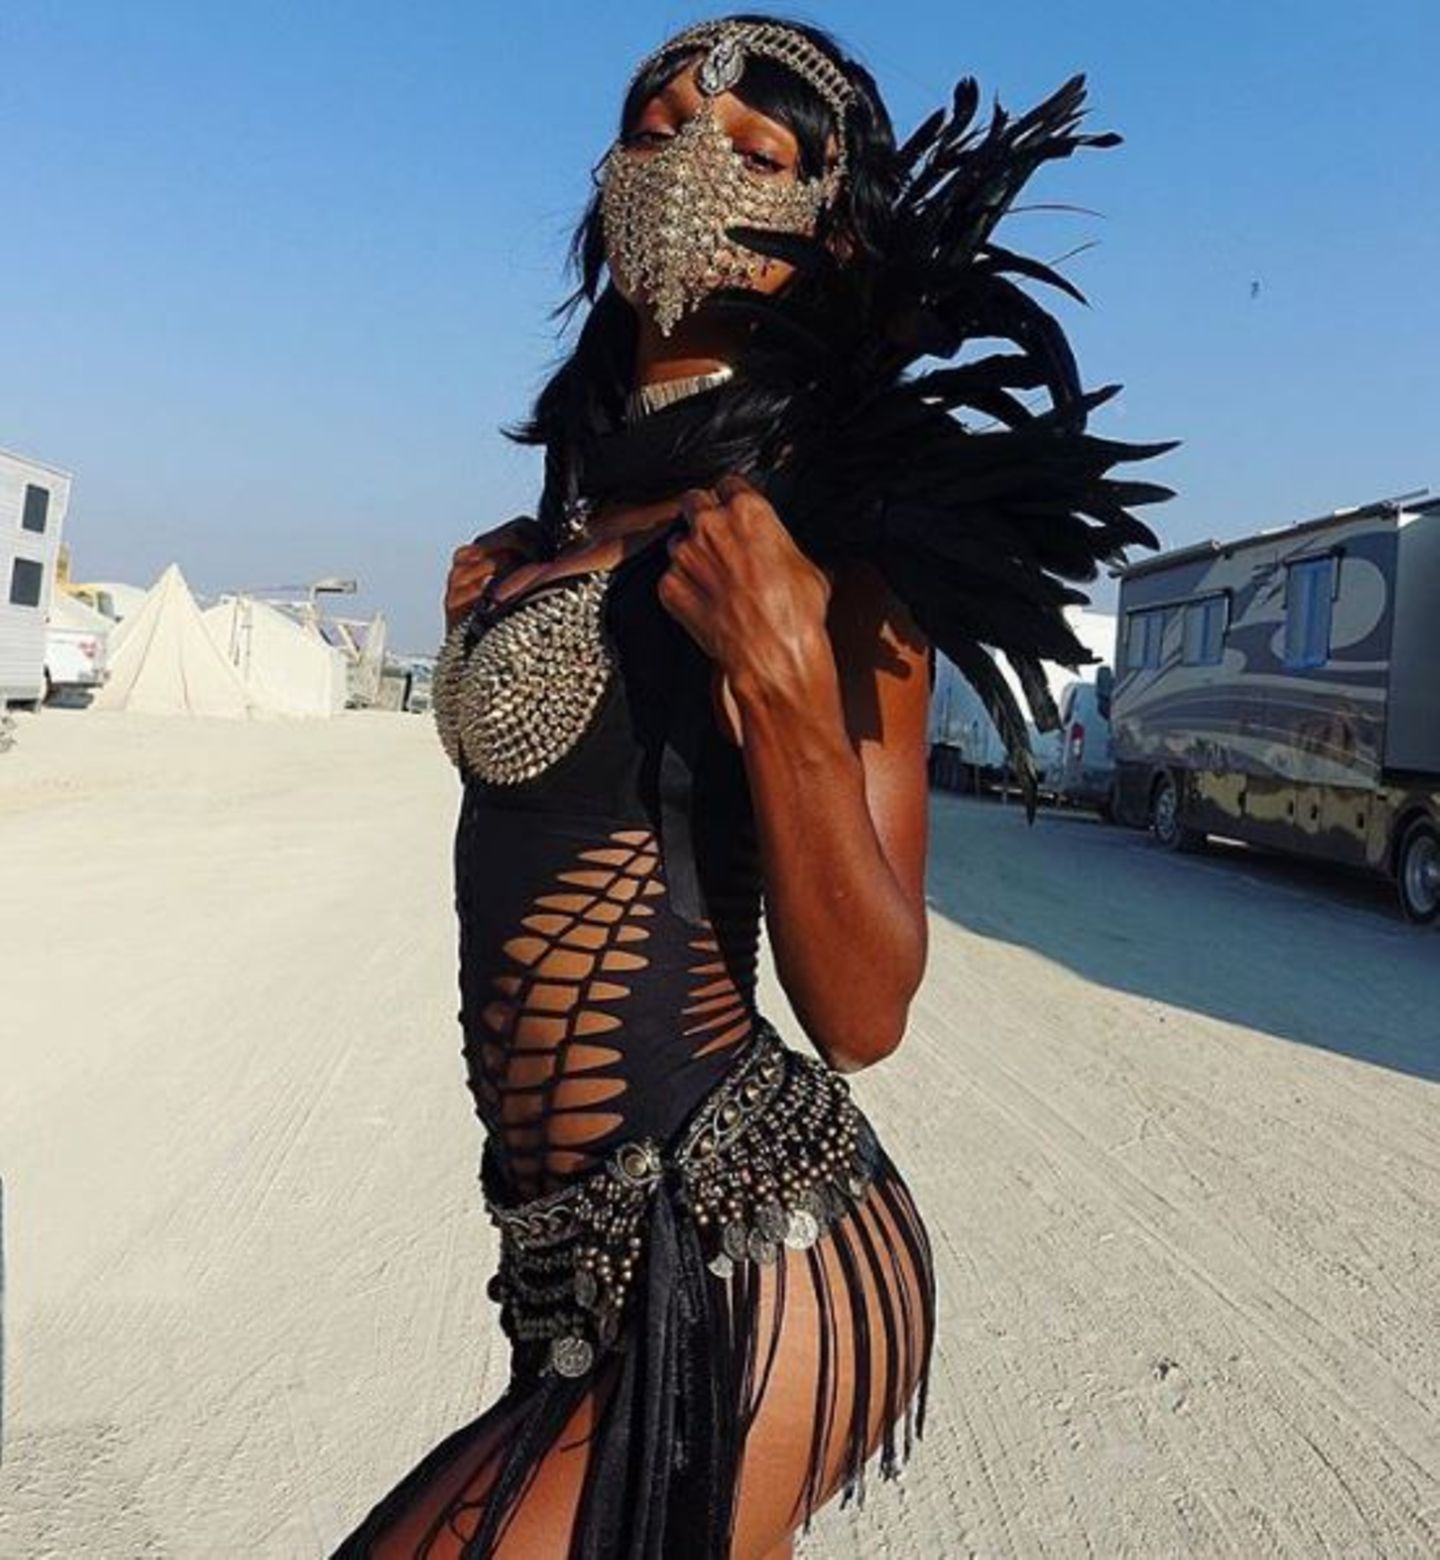 Eine Spur gefährlicher - aber mindestens genauso sexy - ist Jasmine Tookes auf dem Festival unterwegs. Ihre Lösung gegen all den Wüstensand: ein stylischer Mundschutz aus Ketten.